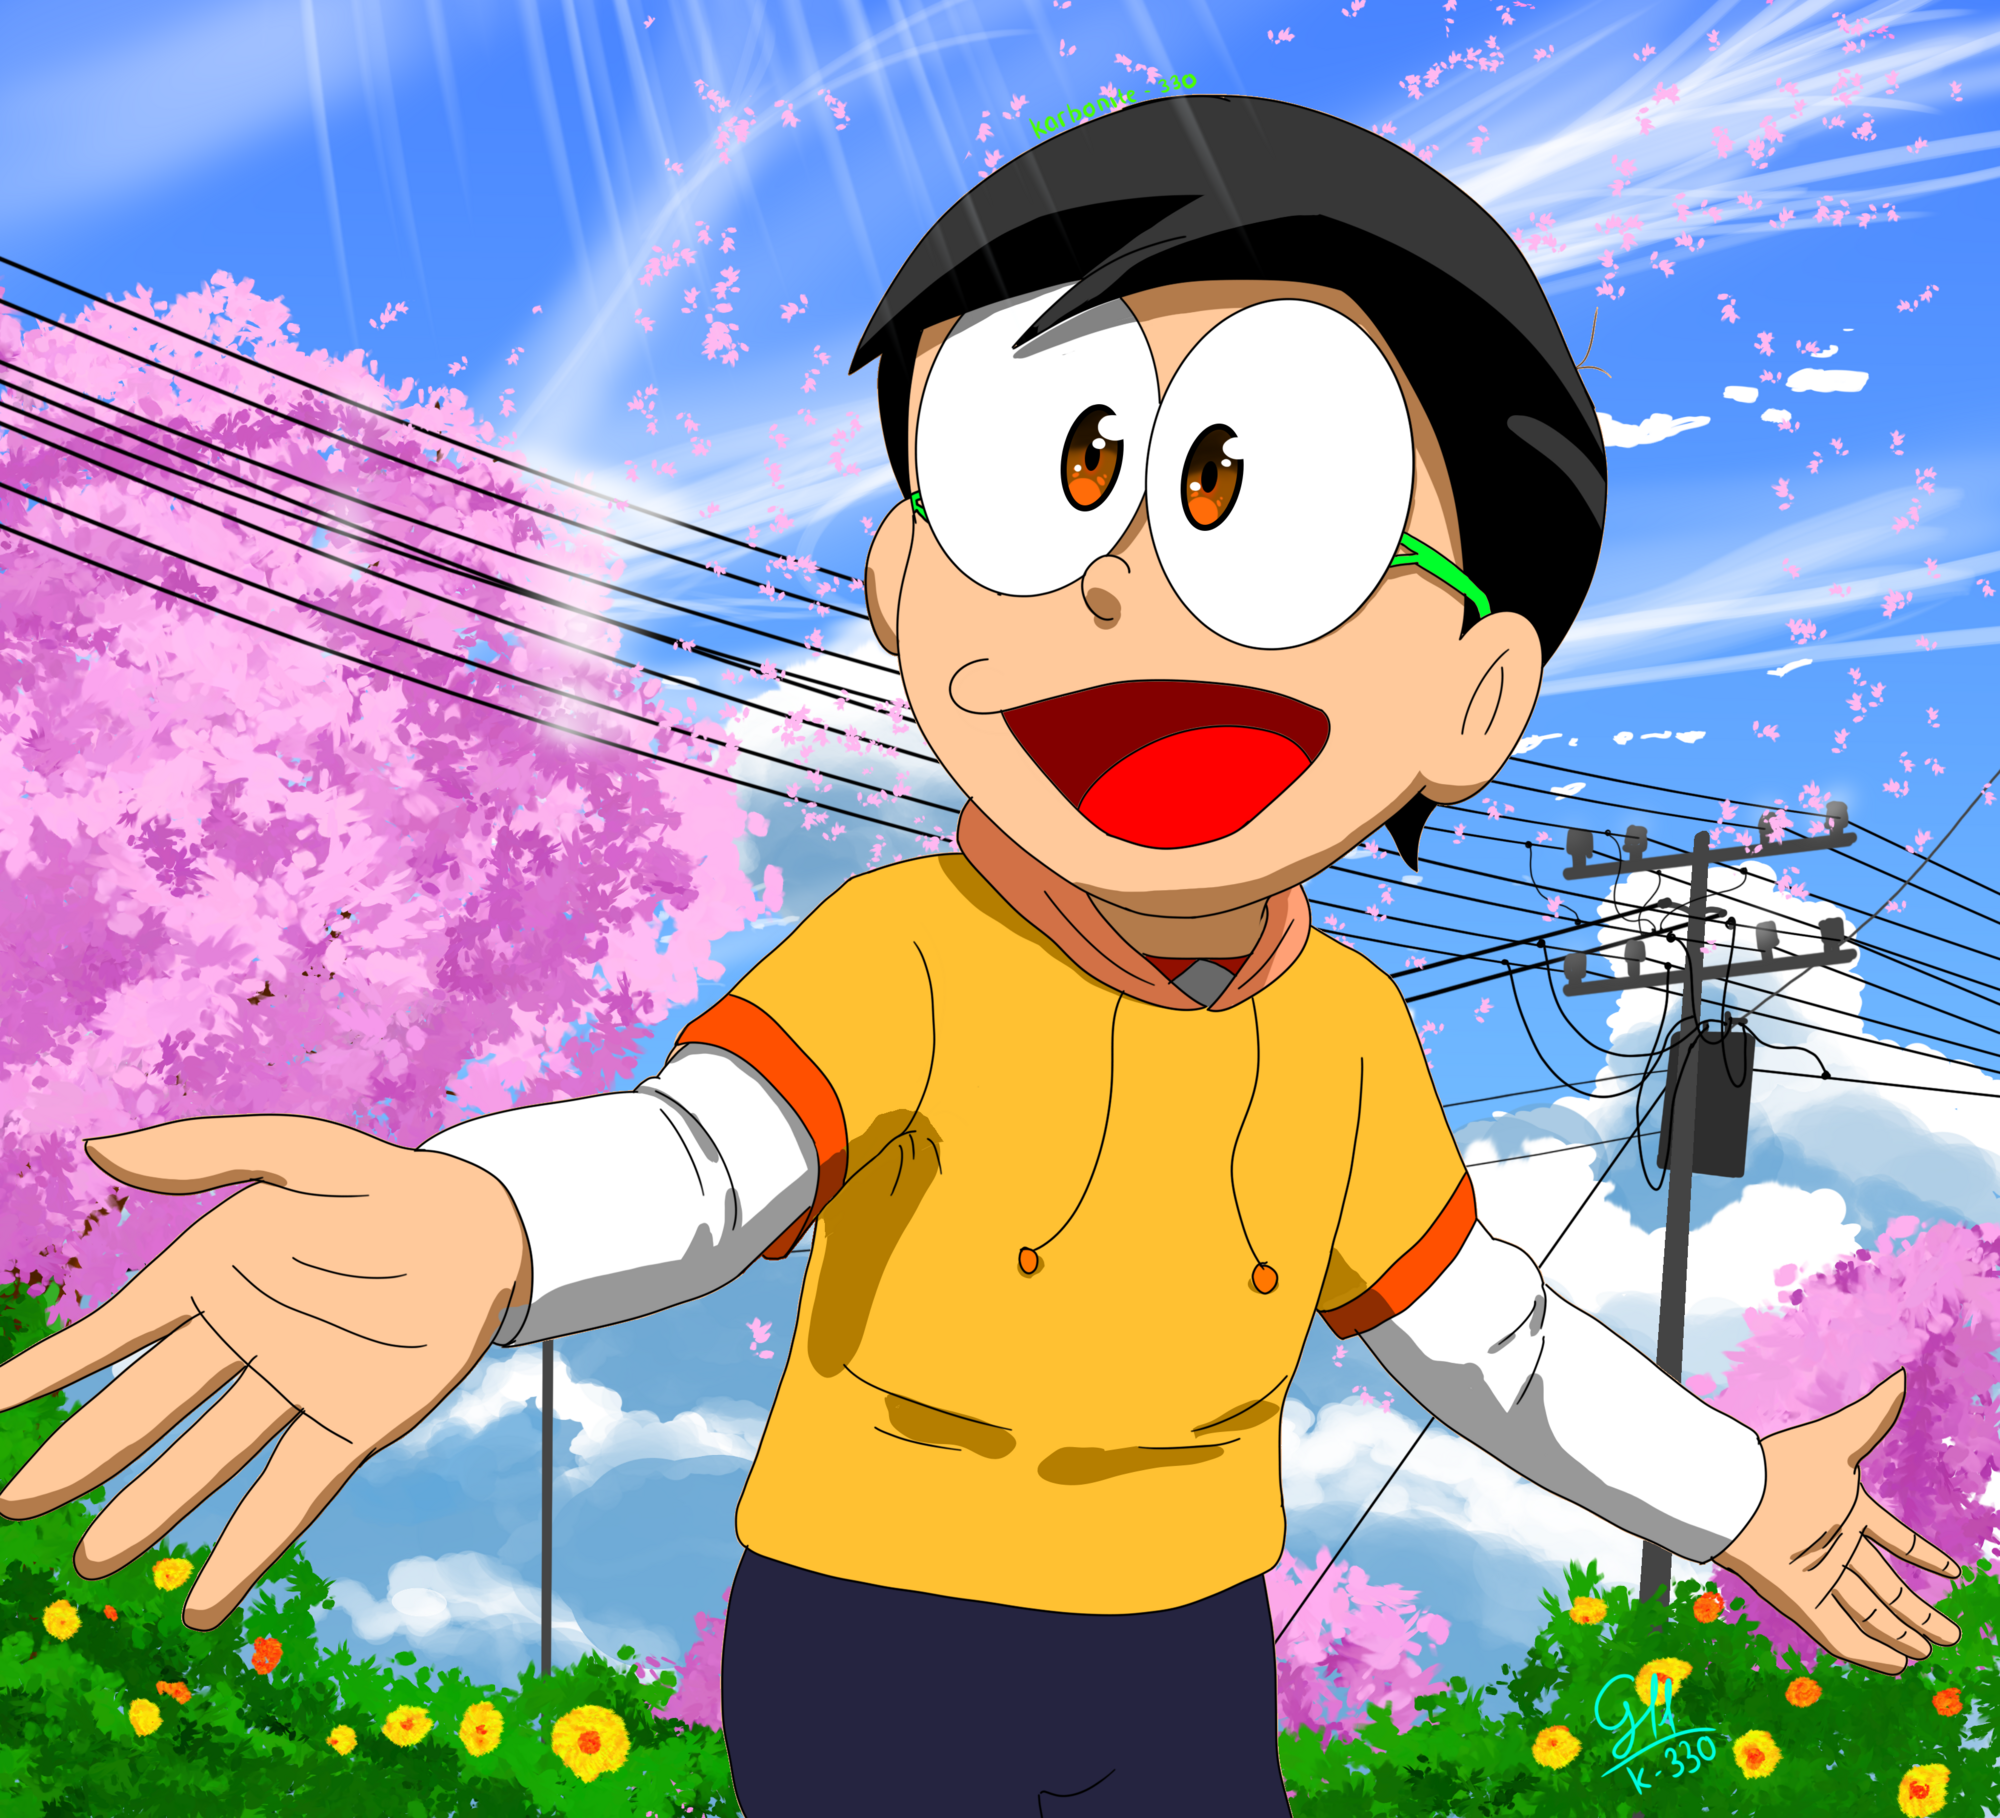 Tải Ngay Top Hình Ảnh Nobita Hoạt Hình Cute Siêu Cấp Dễ Thương  Top 10 Hà  Nội